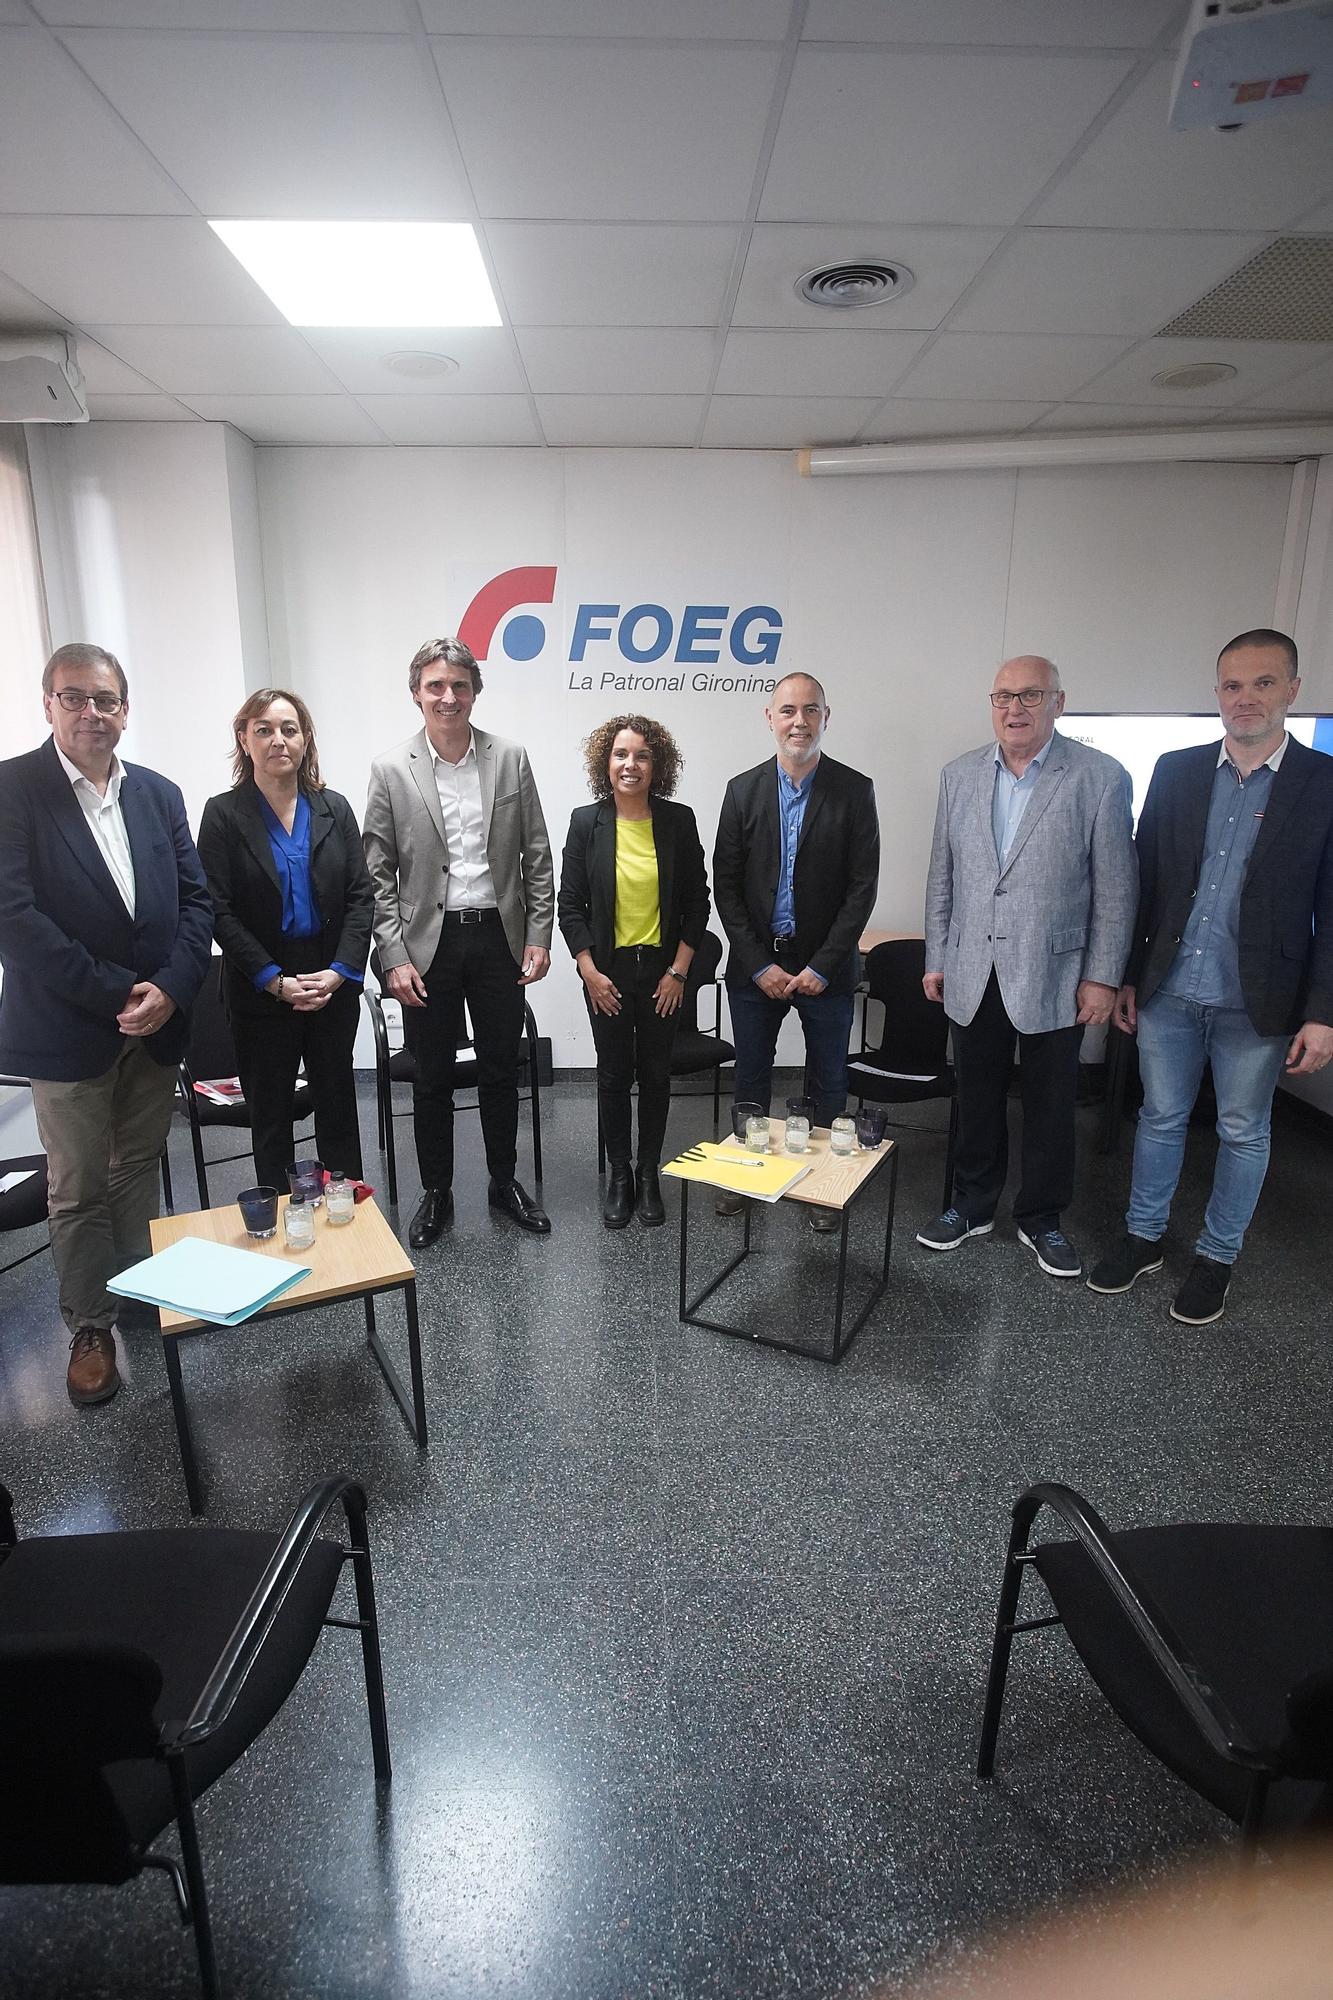 El debat dels candidats gironins a la FOEG en imatges
